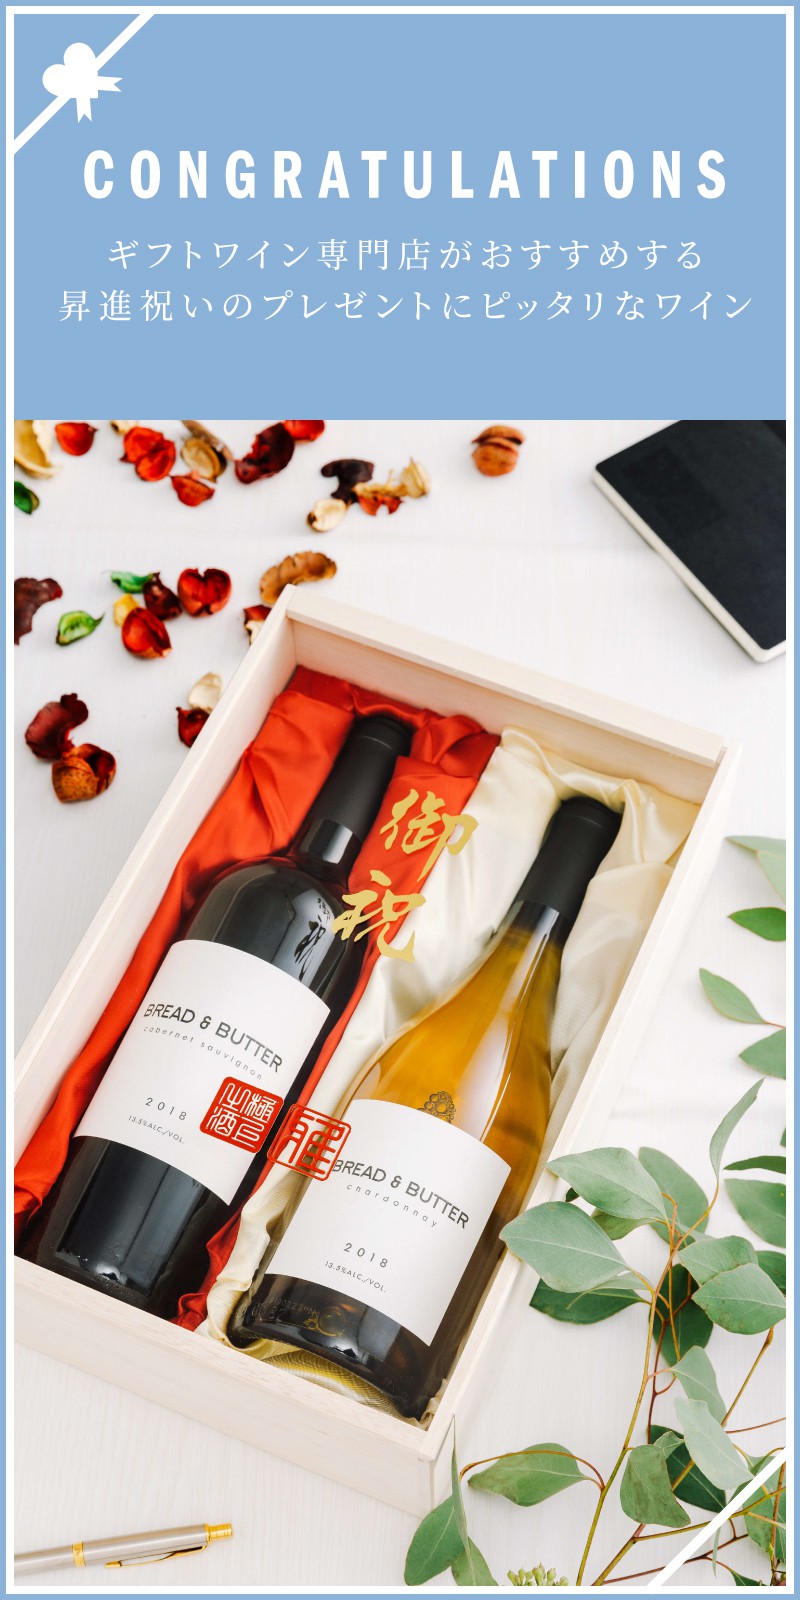 昇進 昇格祝い 栄転祝いのプレゼント ワイン人気ランキング ワイン通販 Lovewine ラブワイン